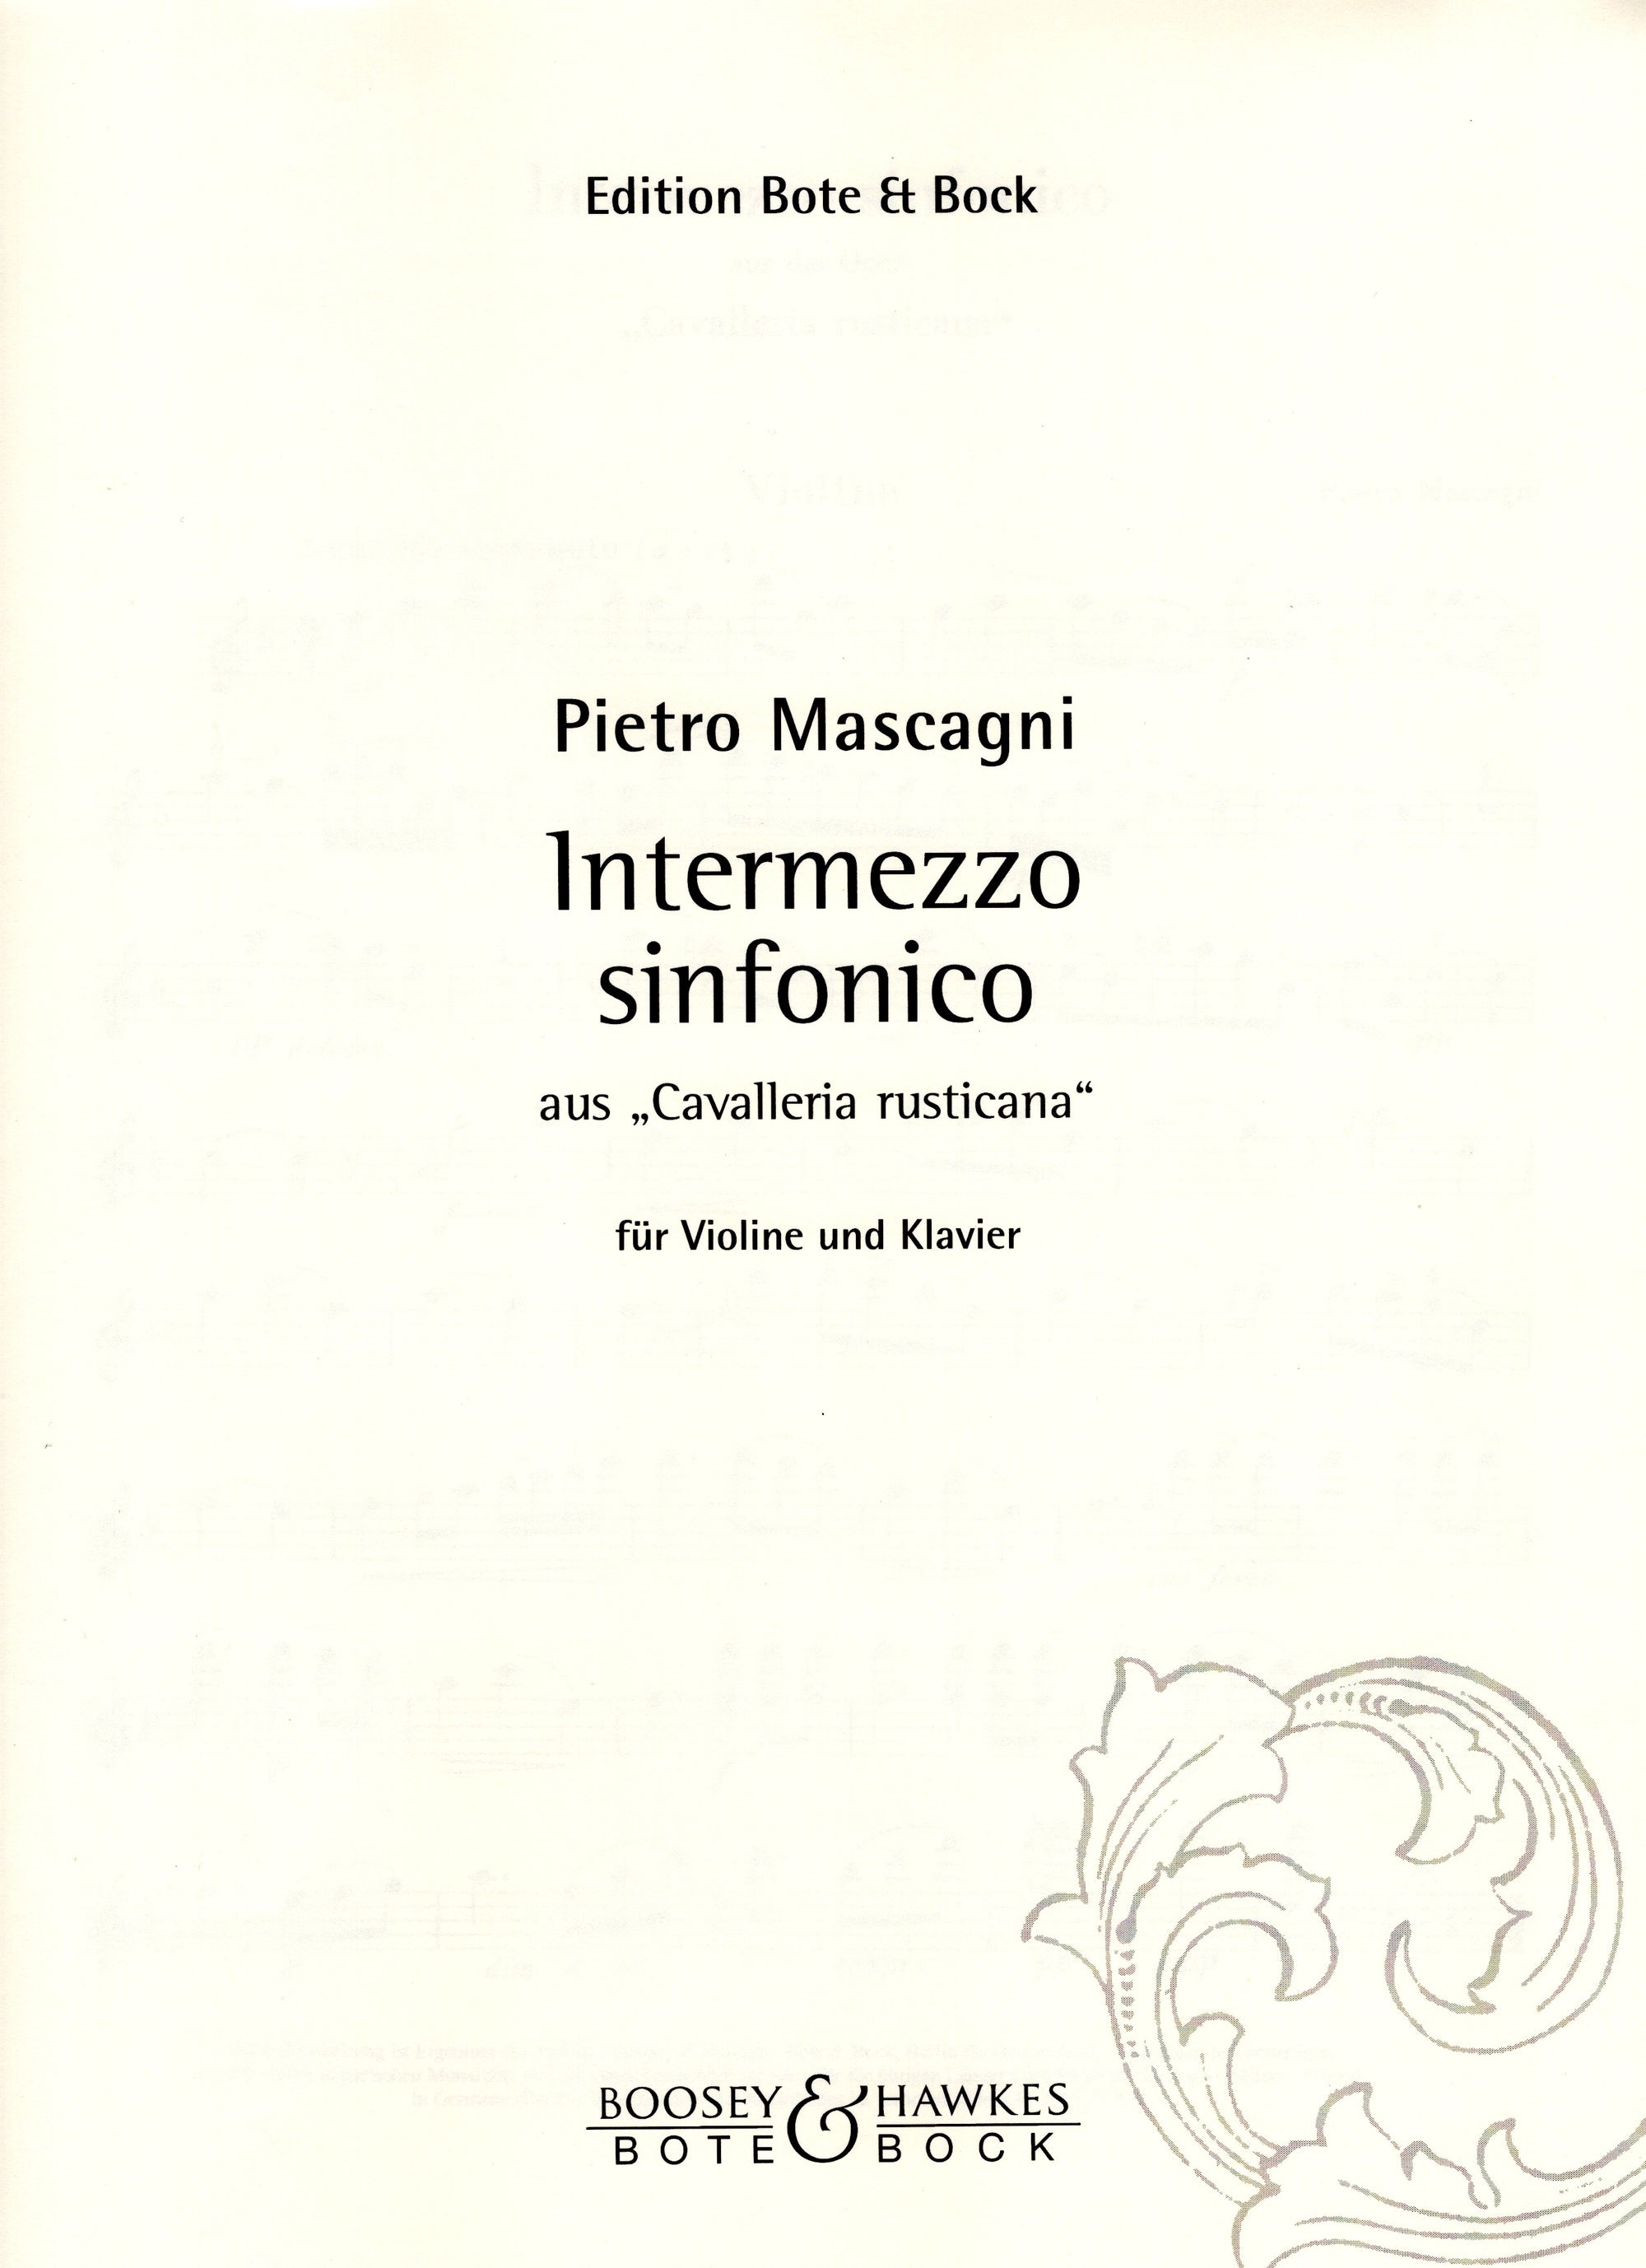 Mascagni: Intermezzo sinfonico